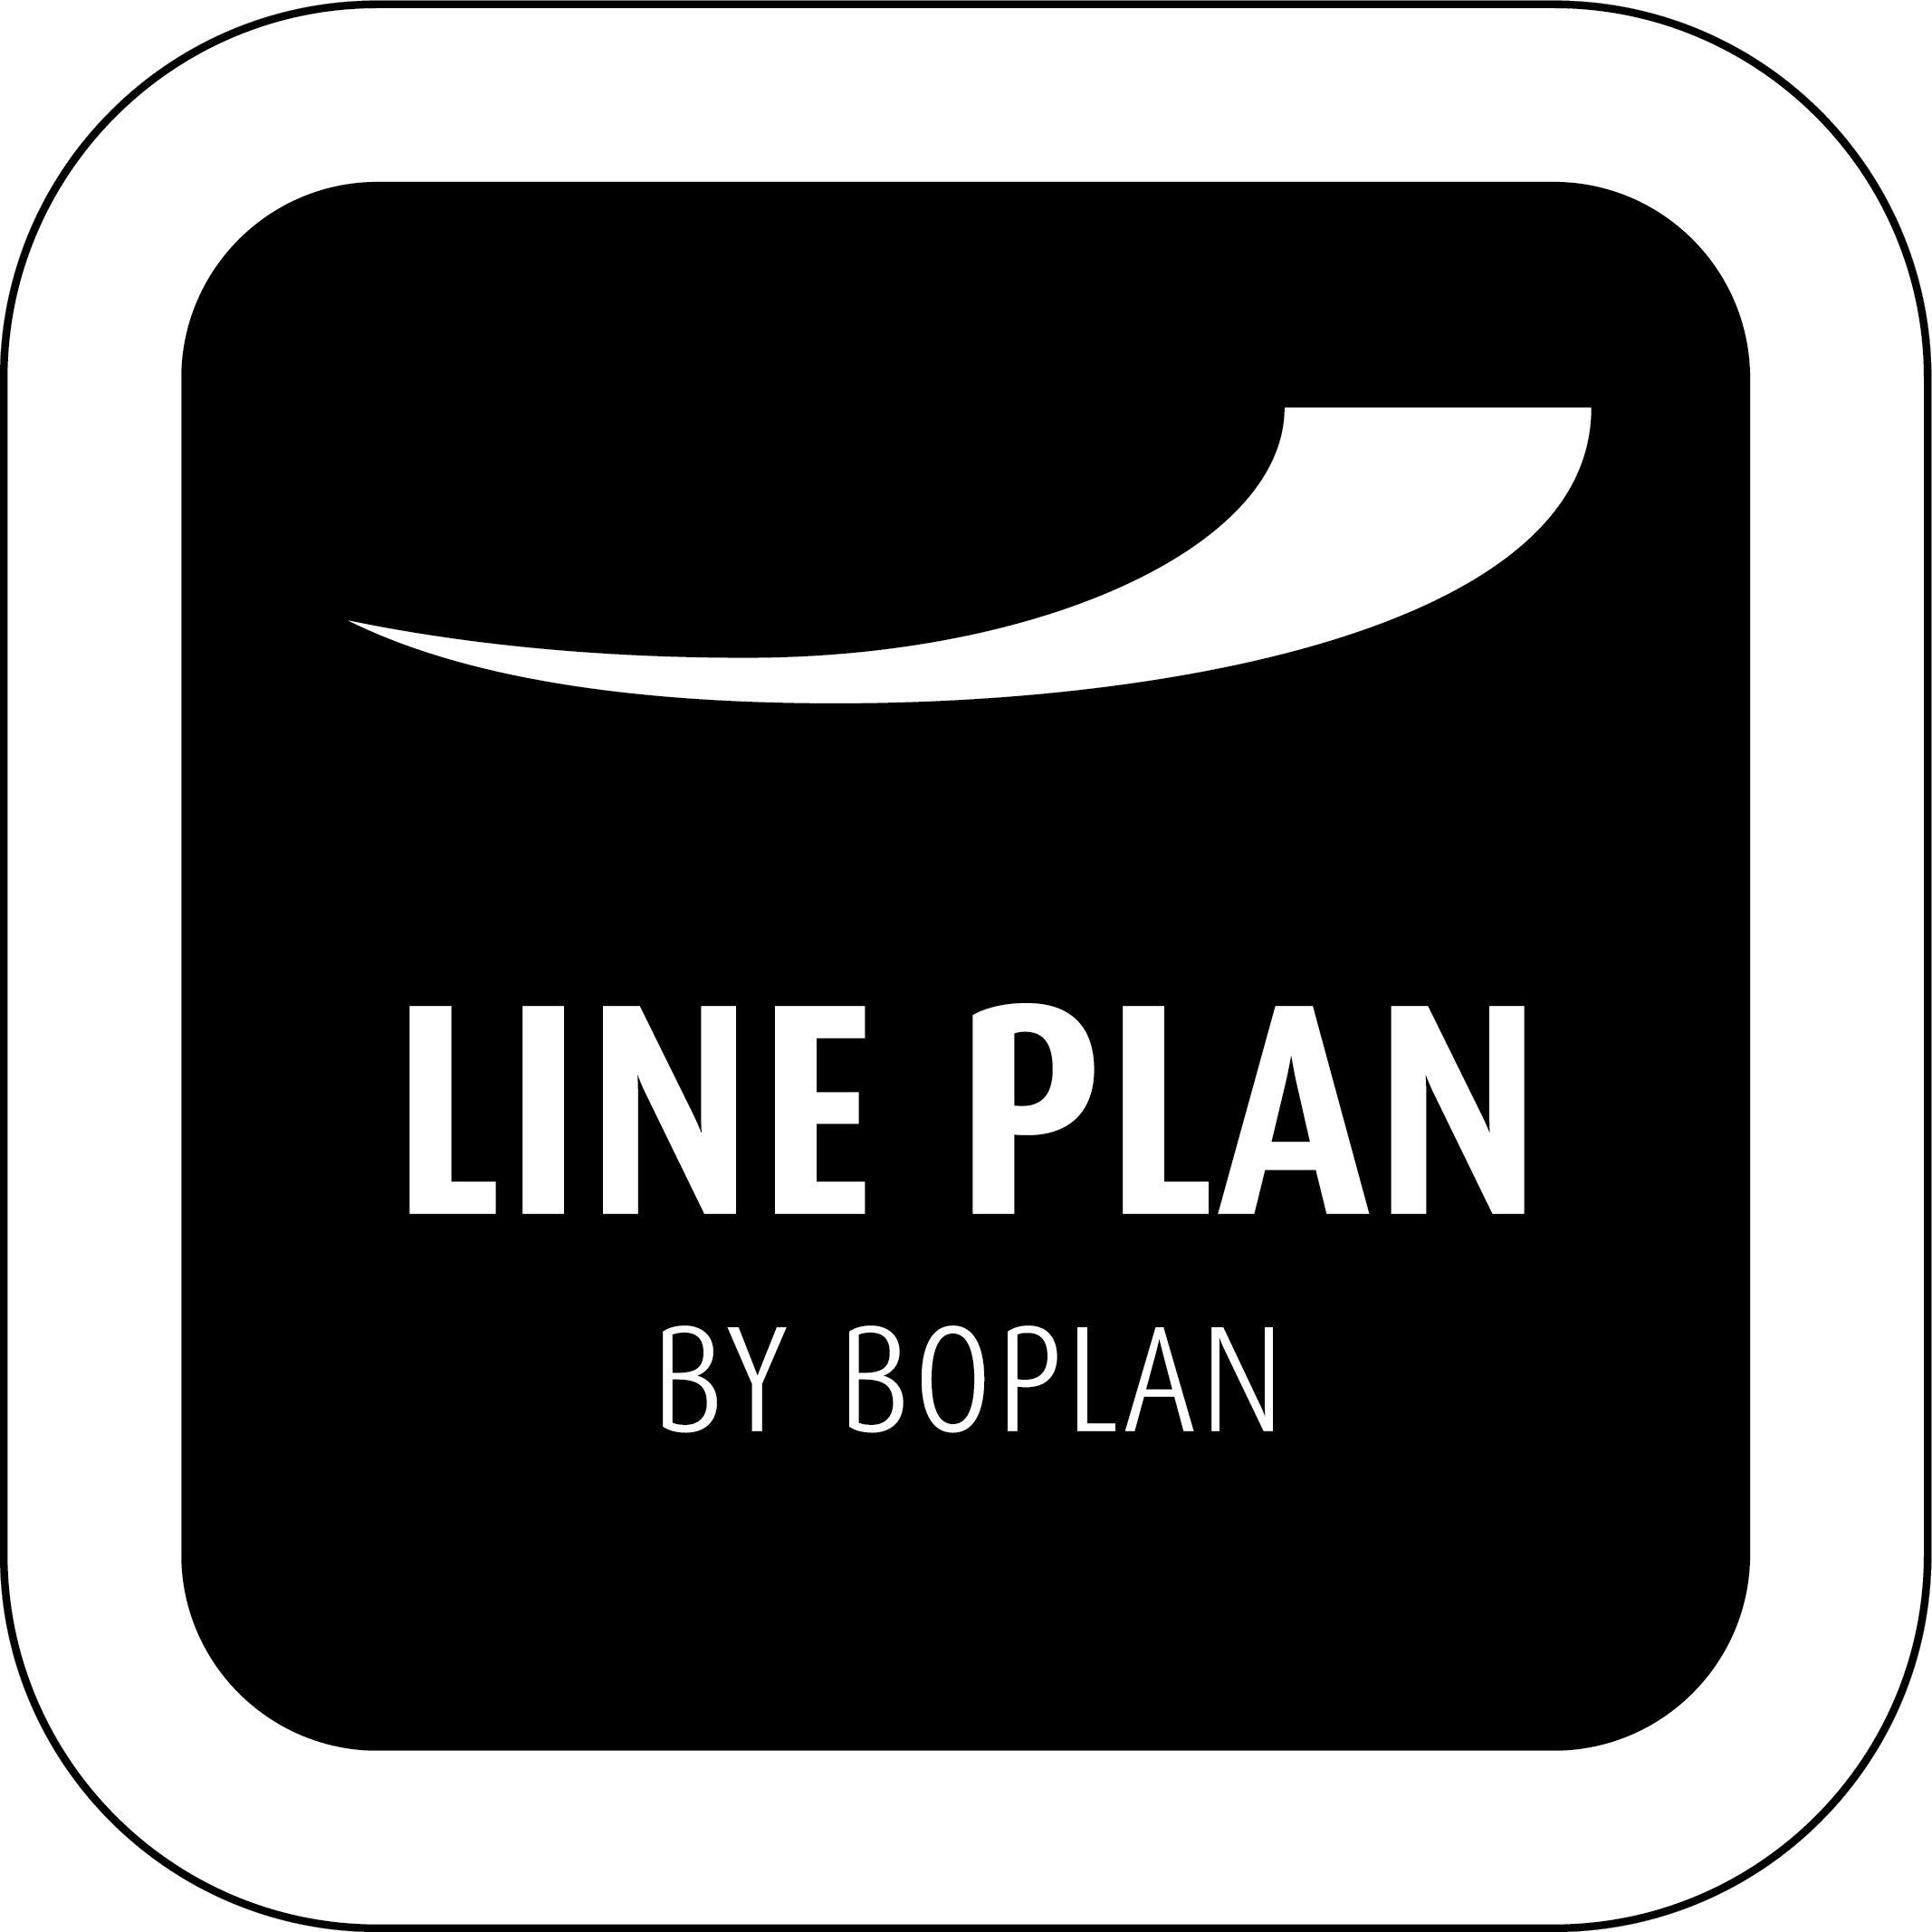 Line Plan logo by Boplan